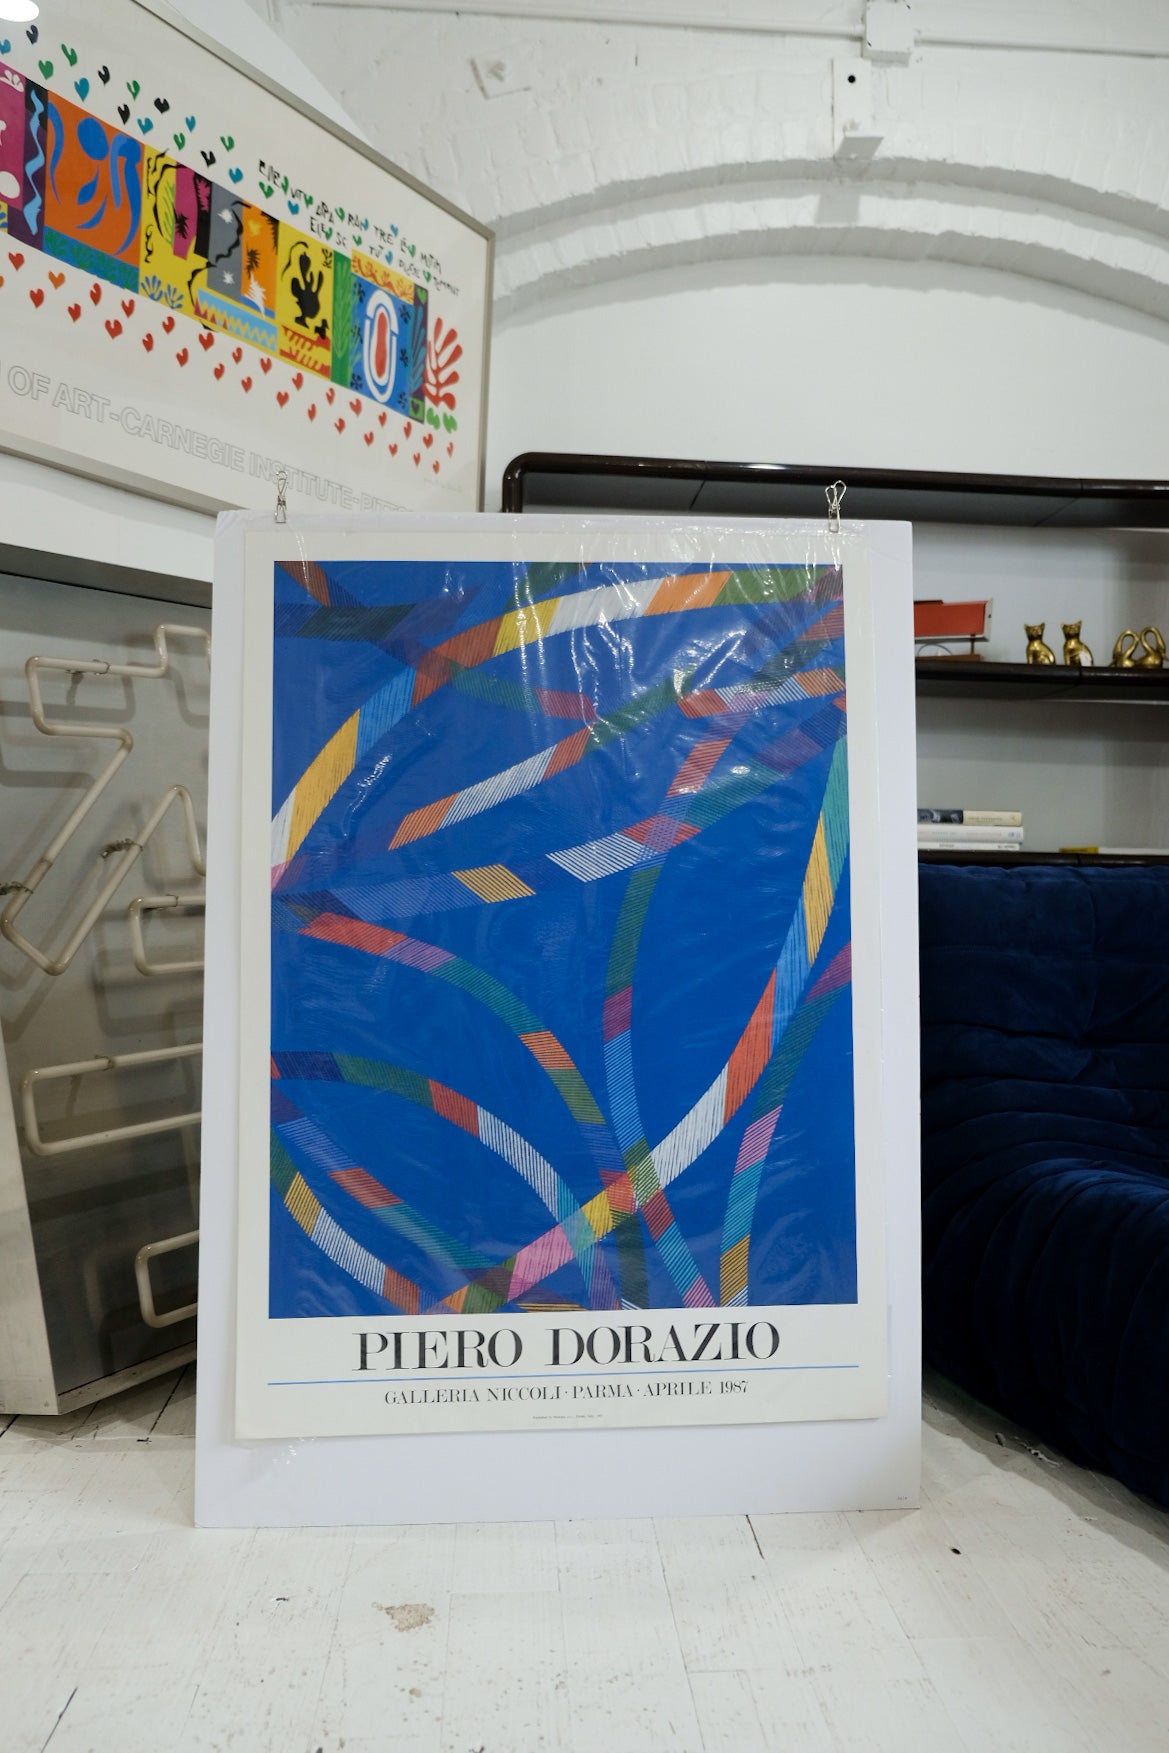 Piero Dorazio Galleria Niccoli Exhibition Print